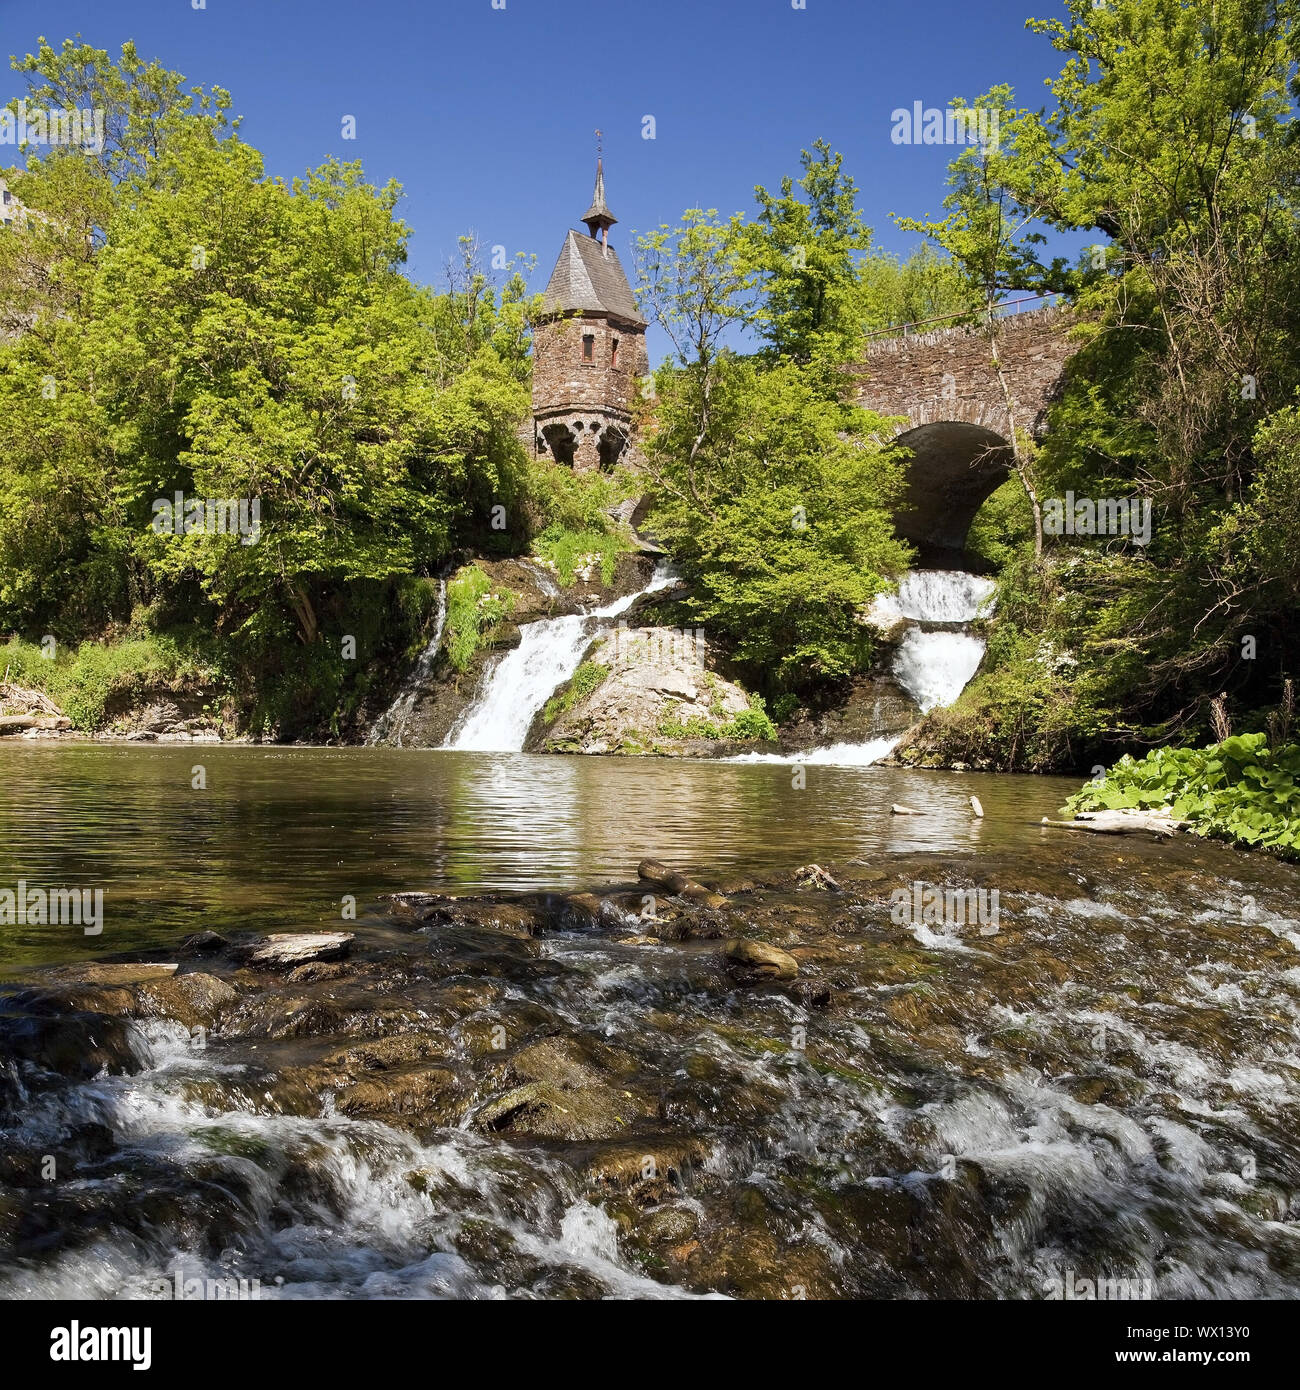 Kapelle am Wasserfall von Elzbach, Rogen, Eifel, Deutschland, Europa Stockfoto